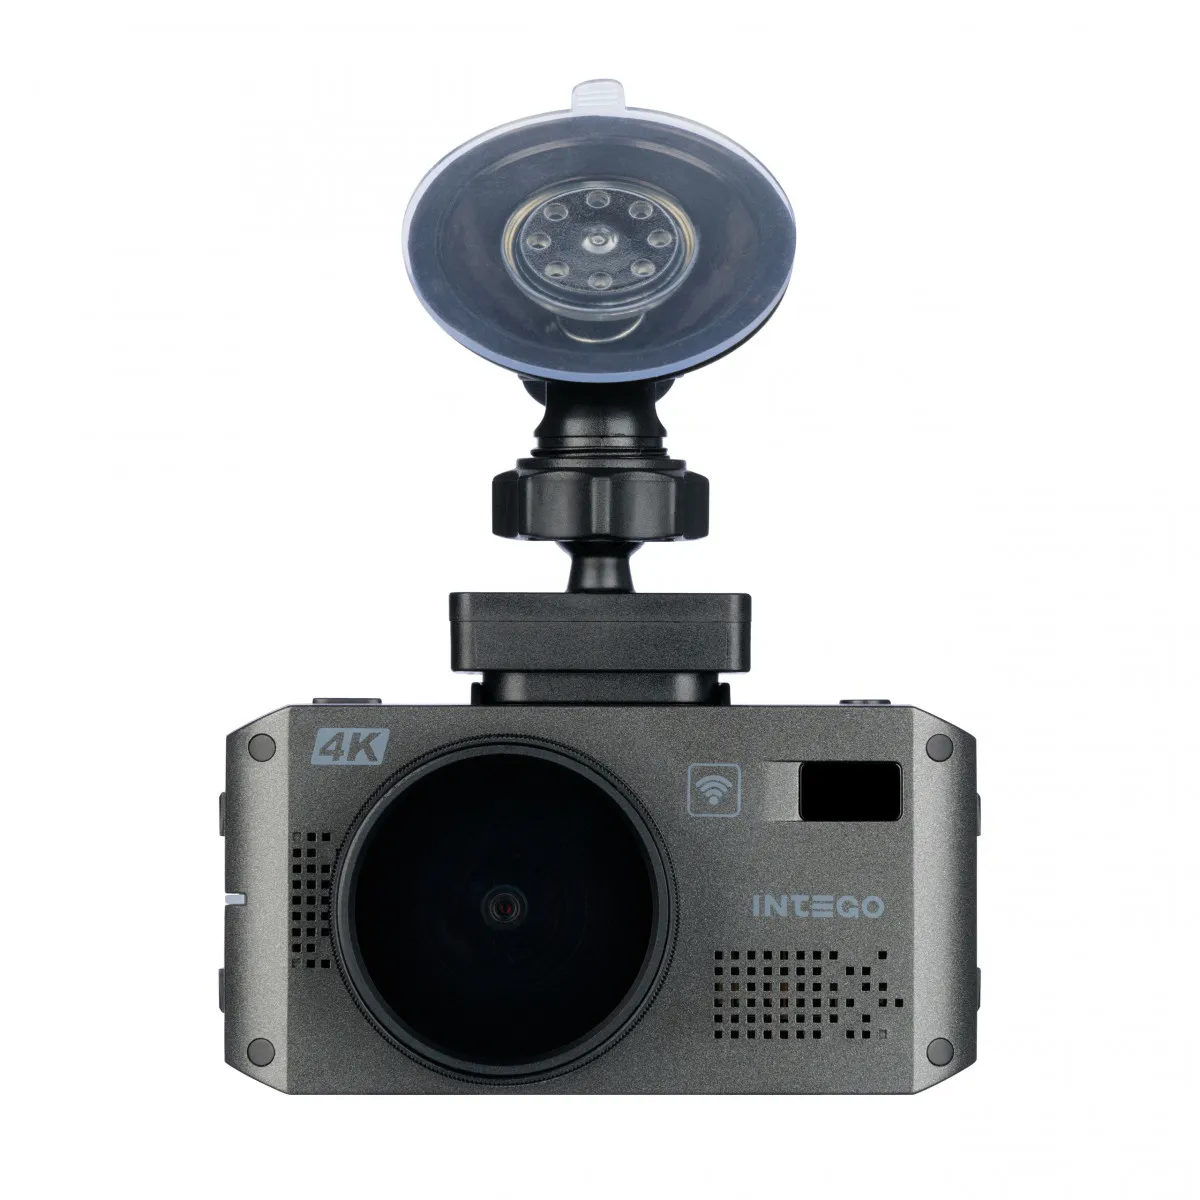 INTEGO VX-1300S 4K videoregistraror+ radar detektori (antiradar)#4